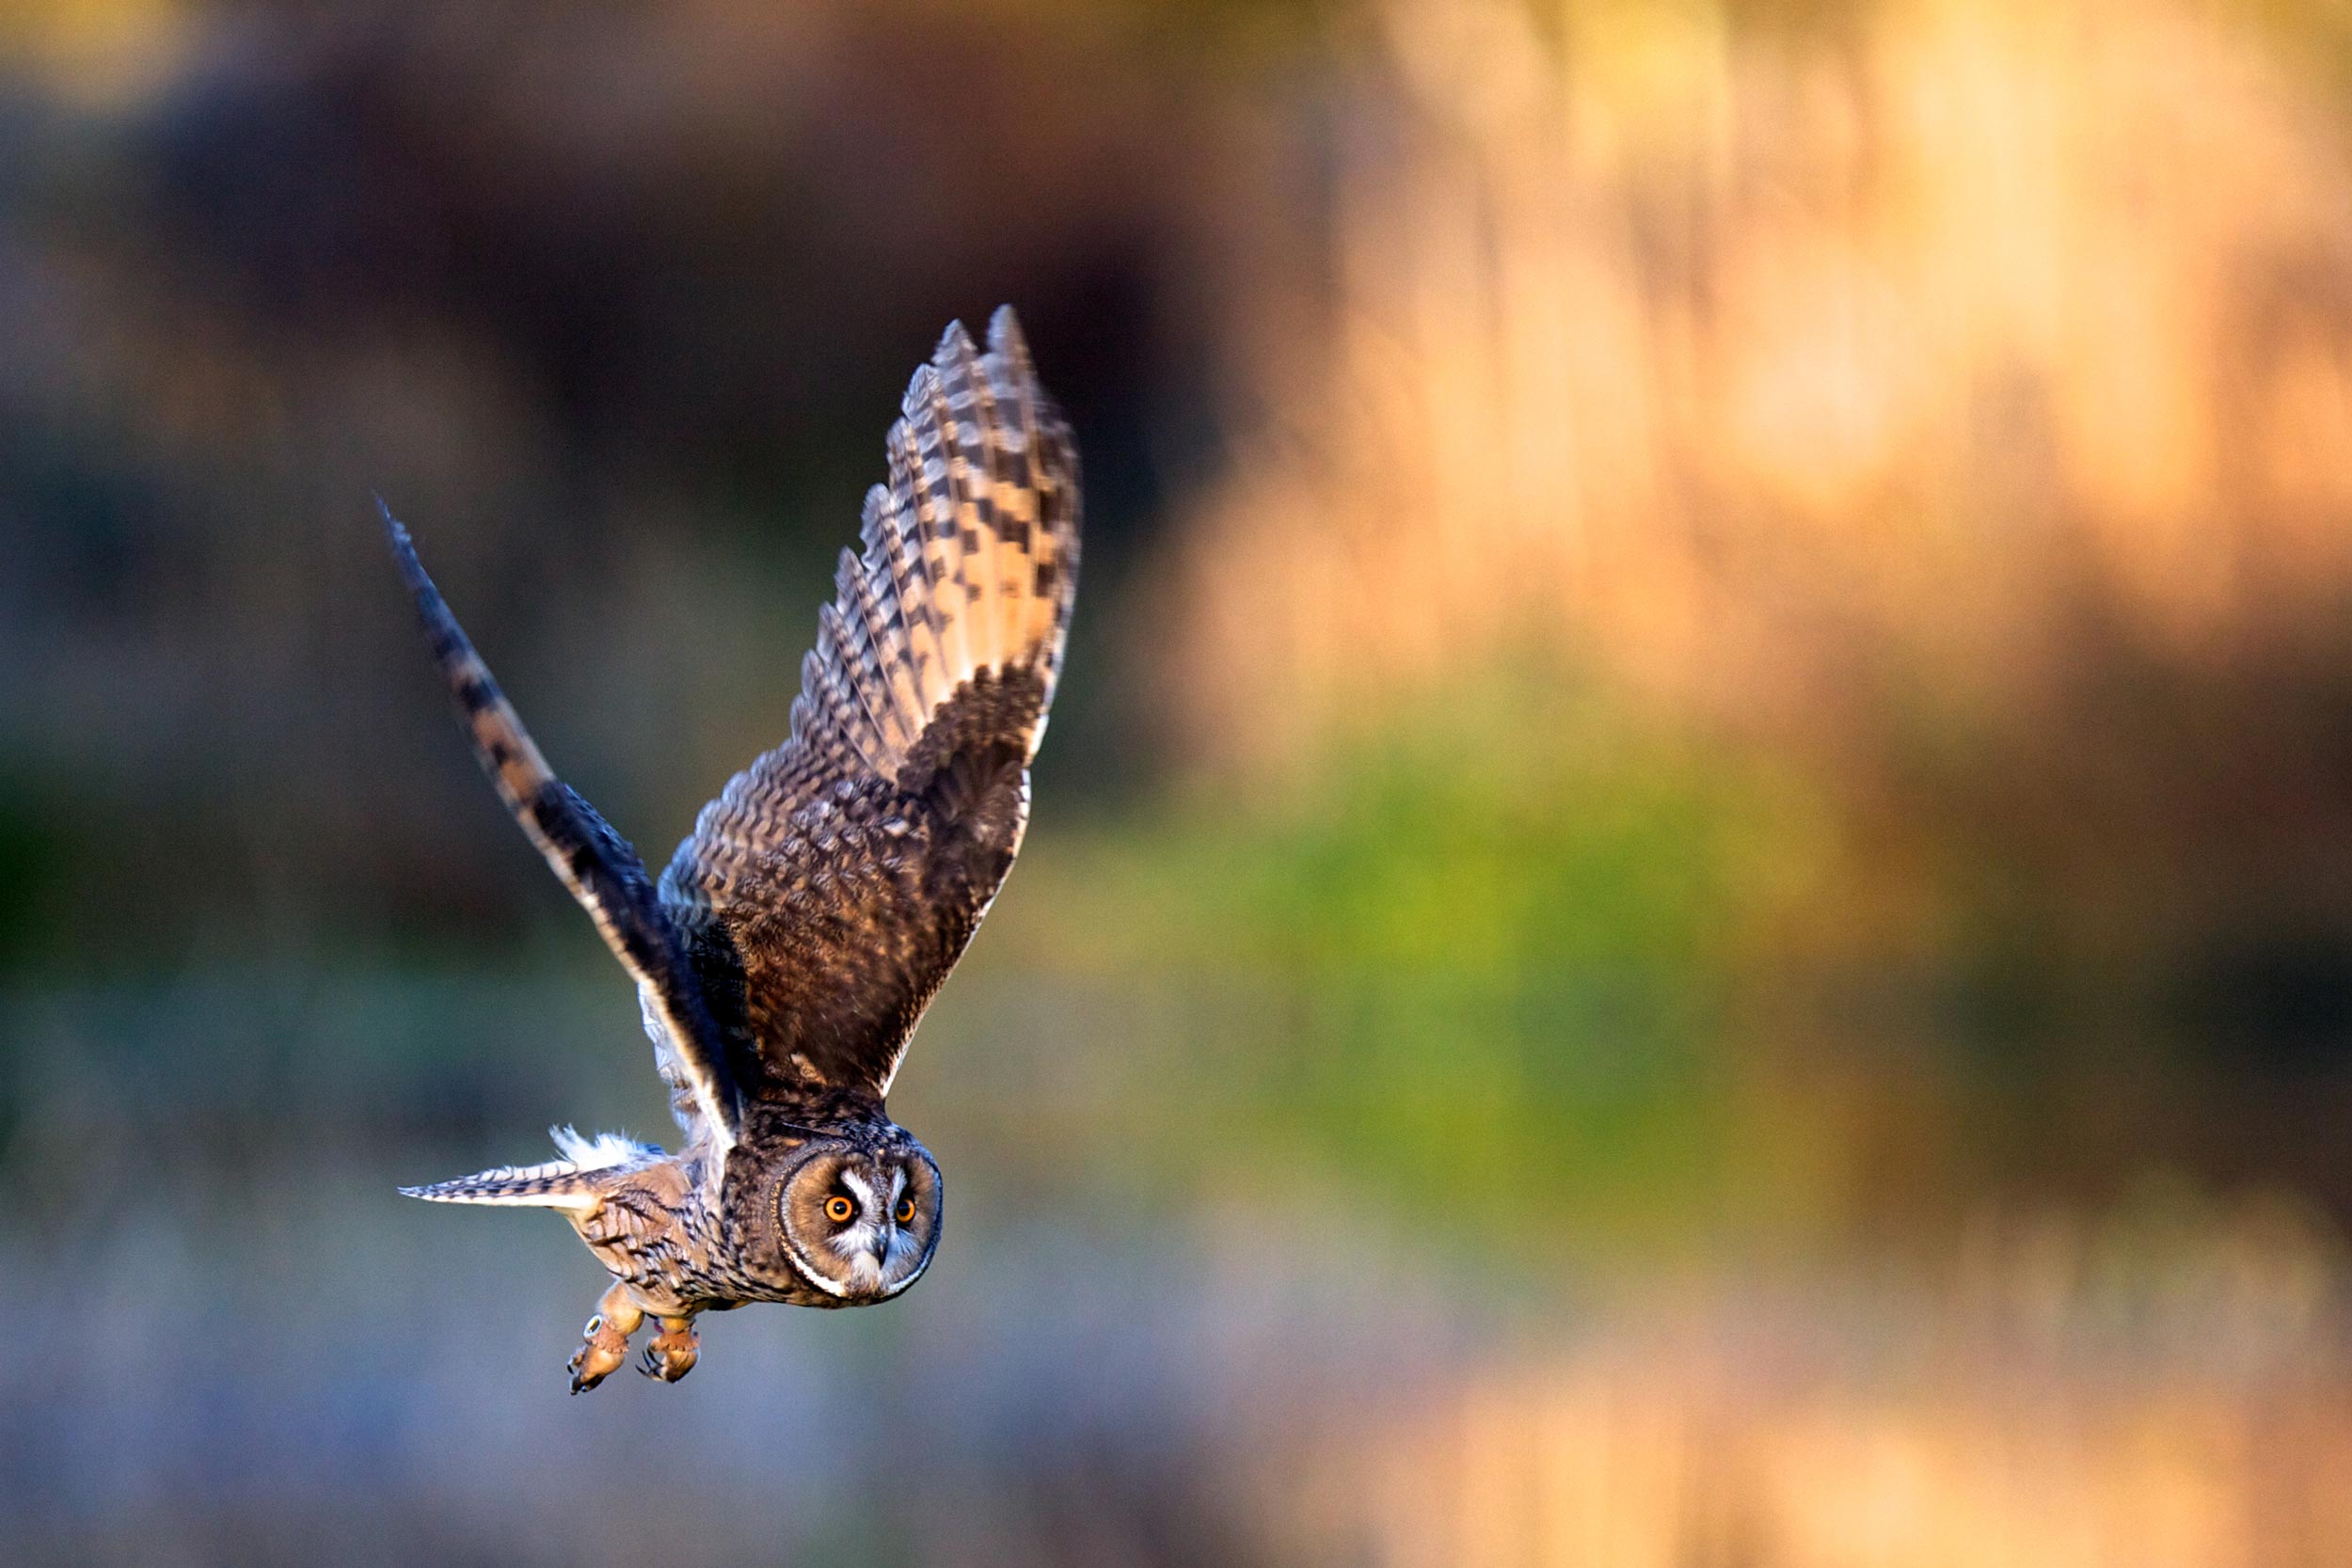 A long-eared owl in flight.